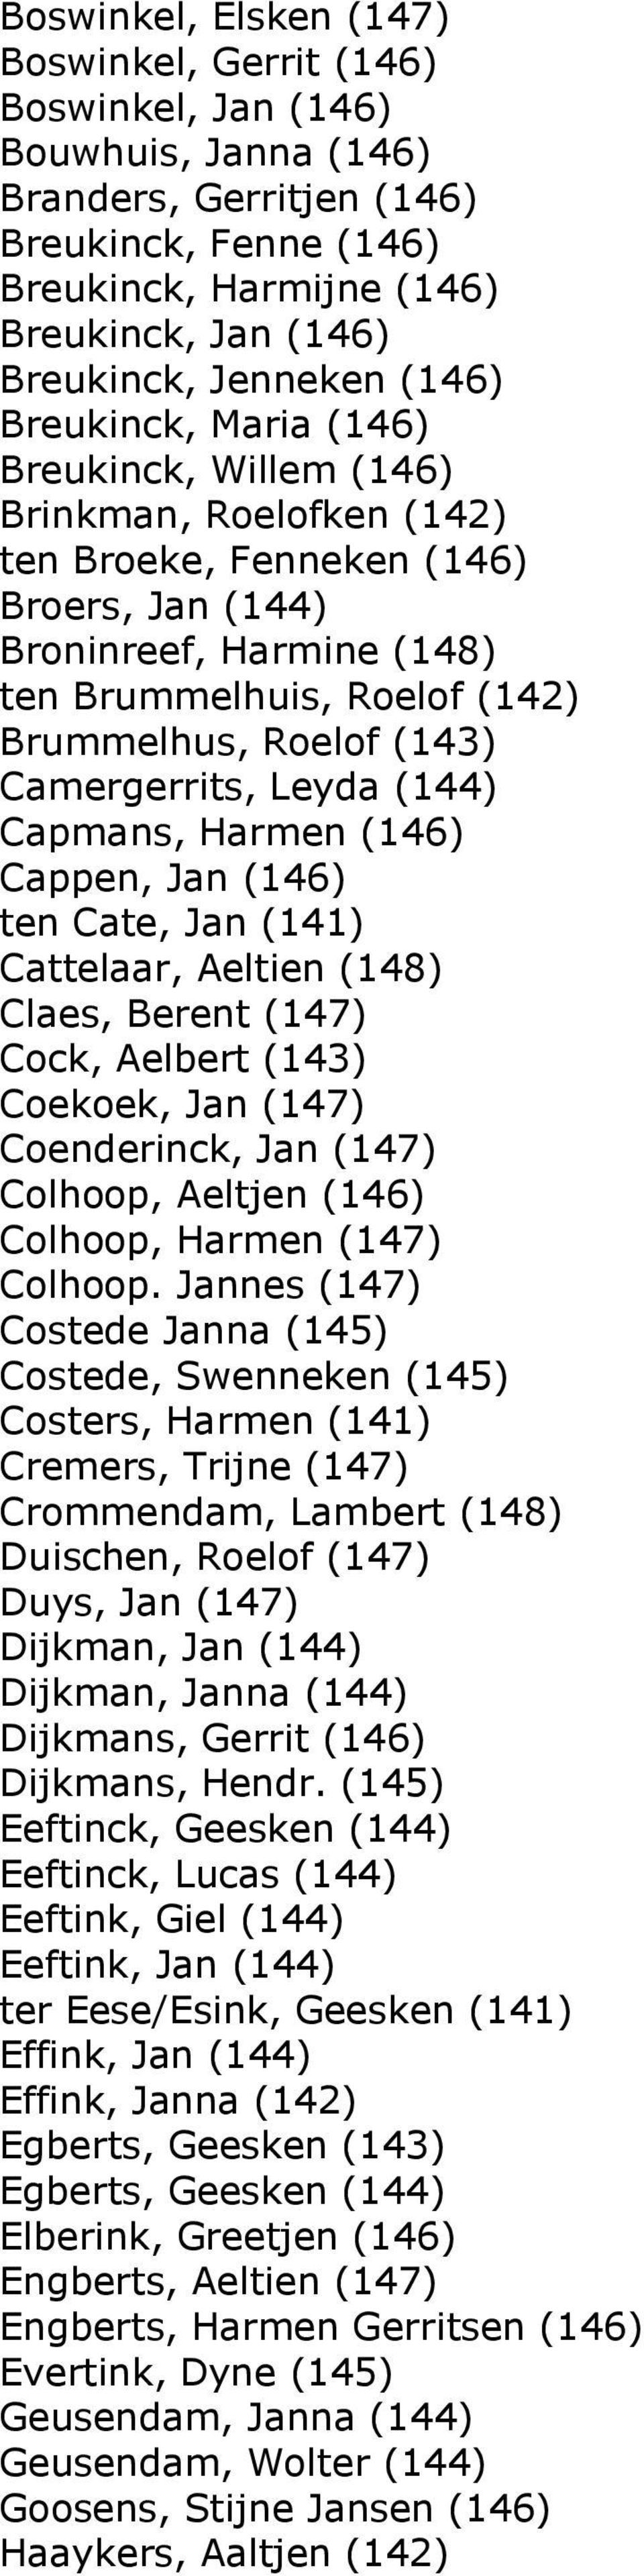 Brummelhus, Roelof (143) Camergerrits, Leyda (144) Capmans, Harmen (146) Cappen, Jan (146) ten Cate, Jan (141) Cattelaar, Aeltien (148) Claes, Berent (147) Cock, Aelbert (143) Coekoek, Jan (147)